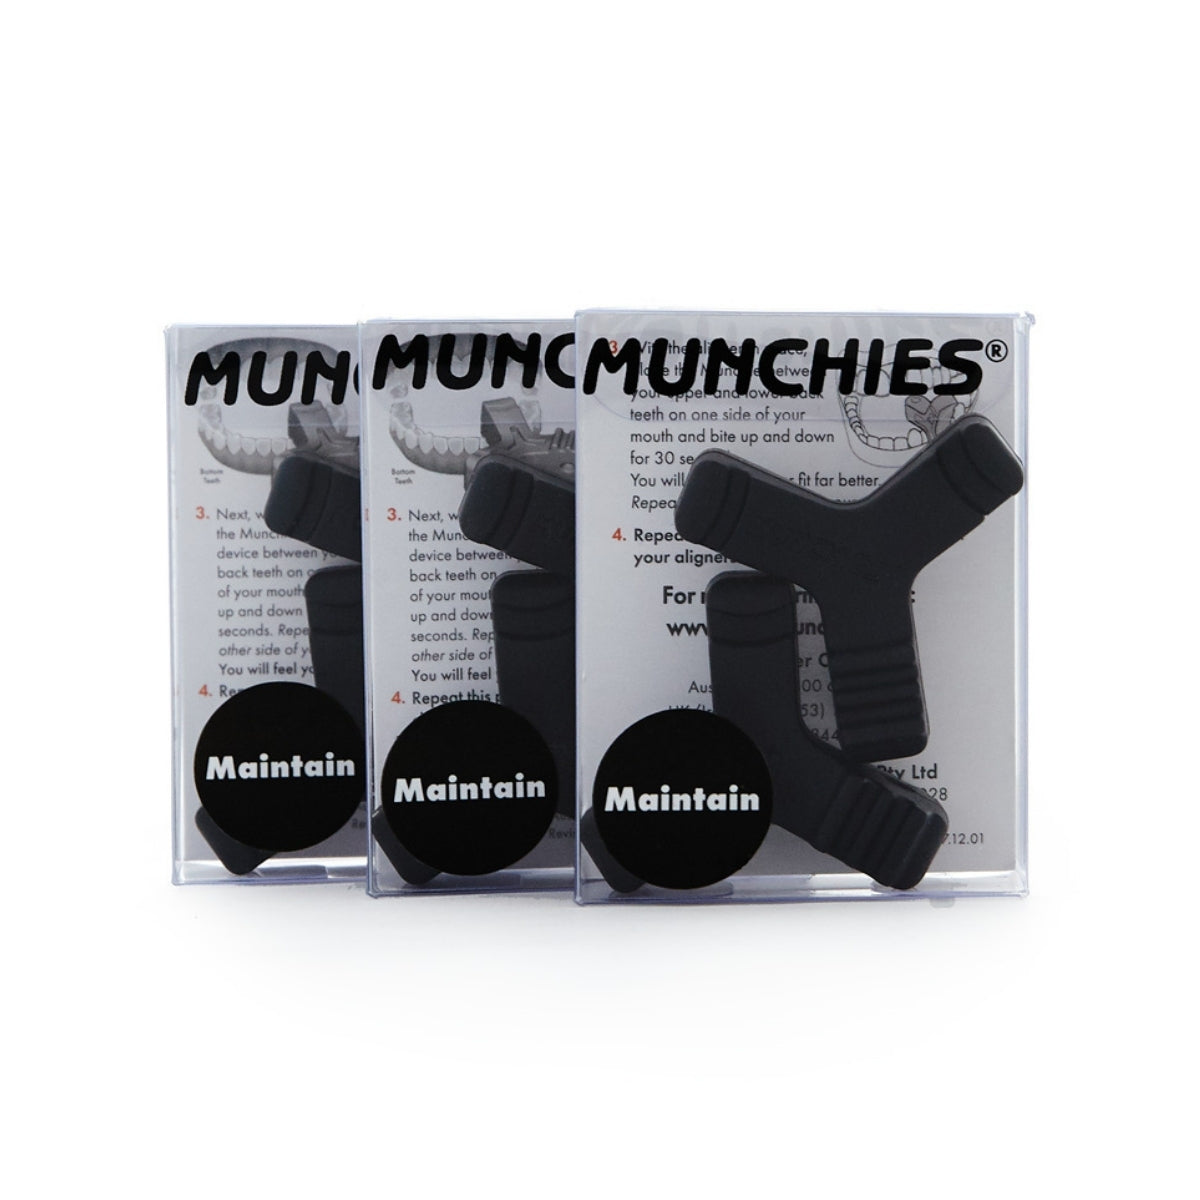 3x Munchies® Maintain 2 Piece Packs